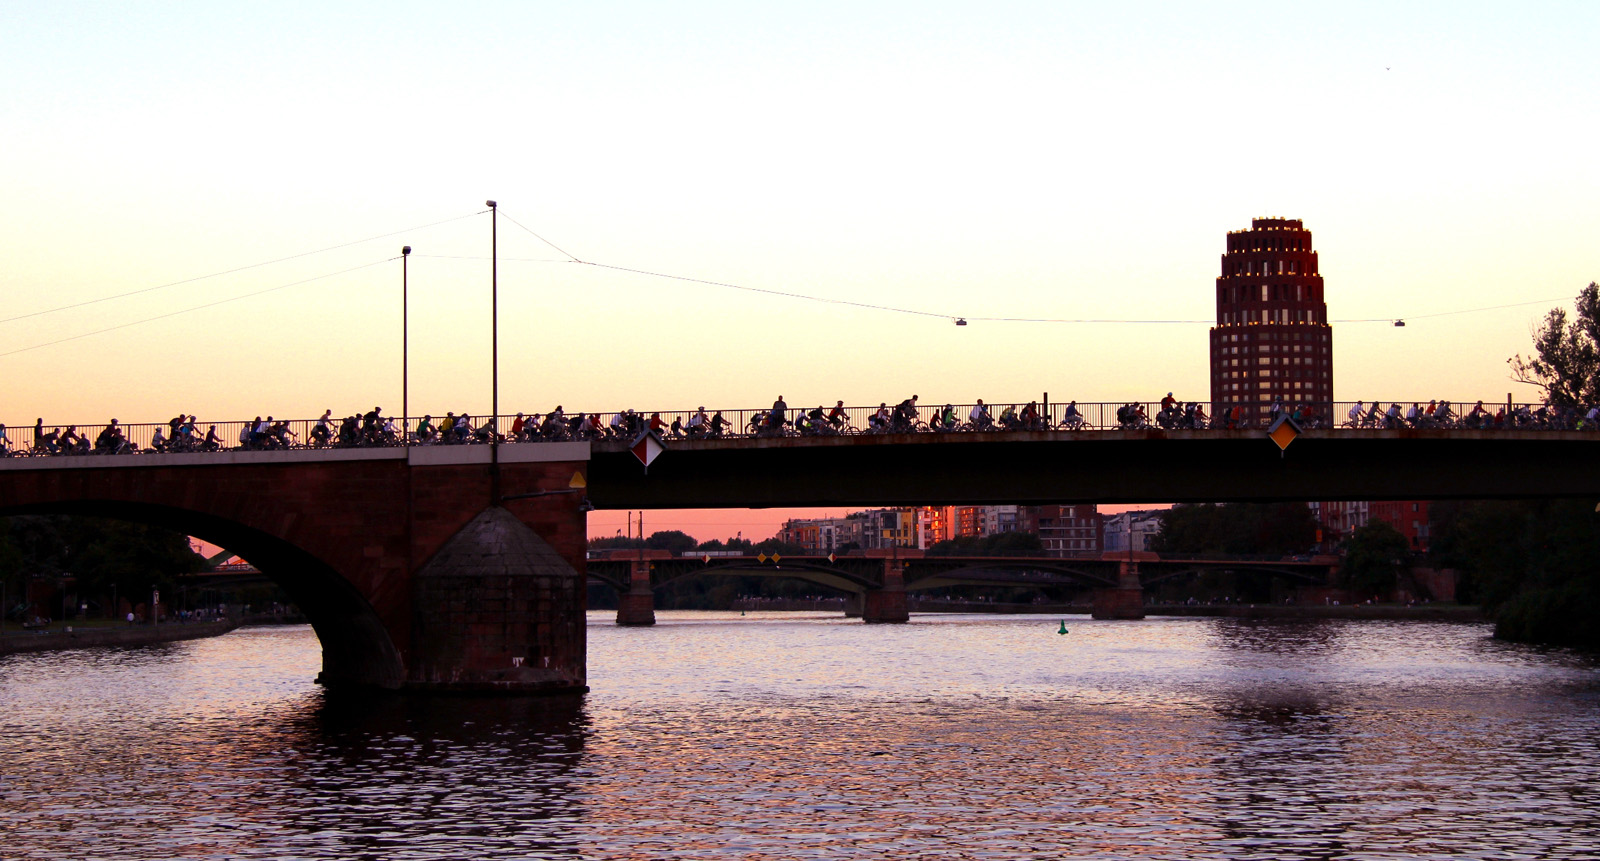 ADFC bike-night 2012 passiert die Alte Brücke, Frankfurt, Foto: Torsten Willner